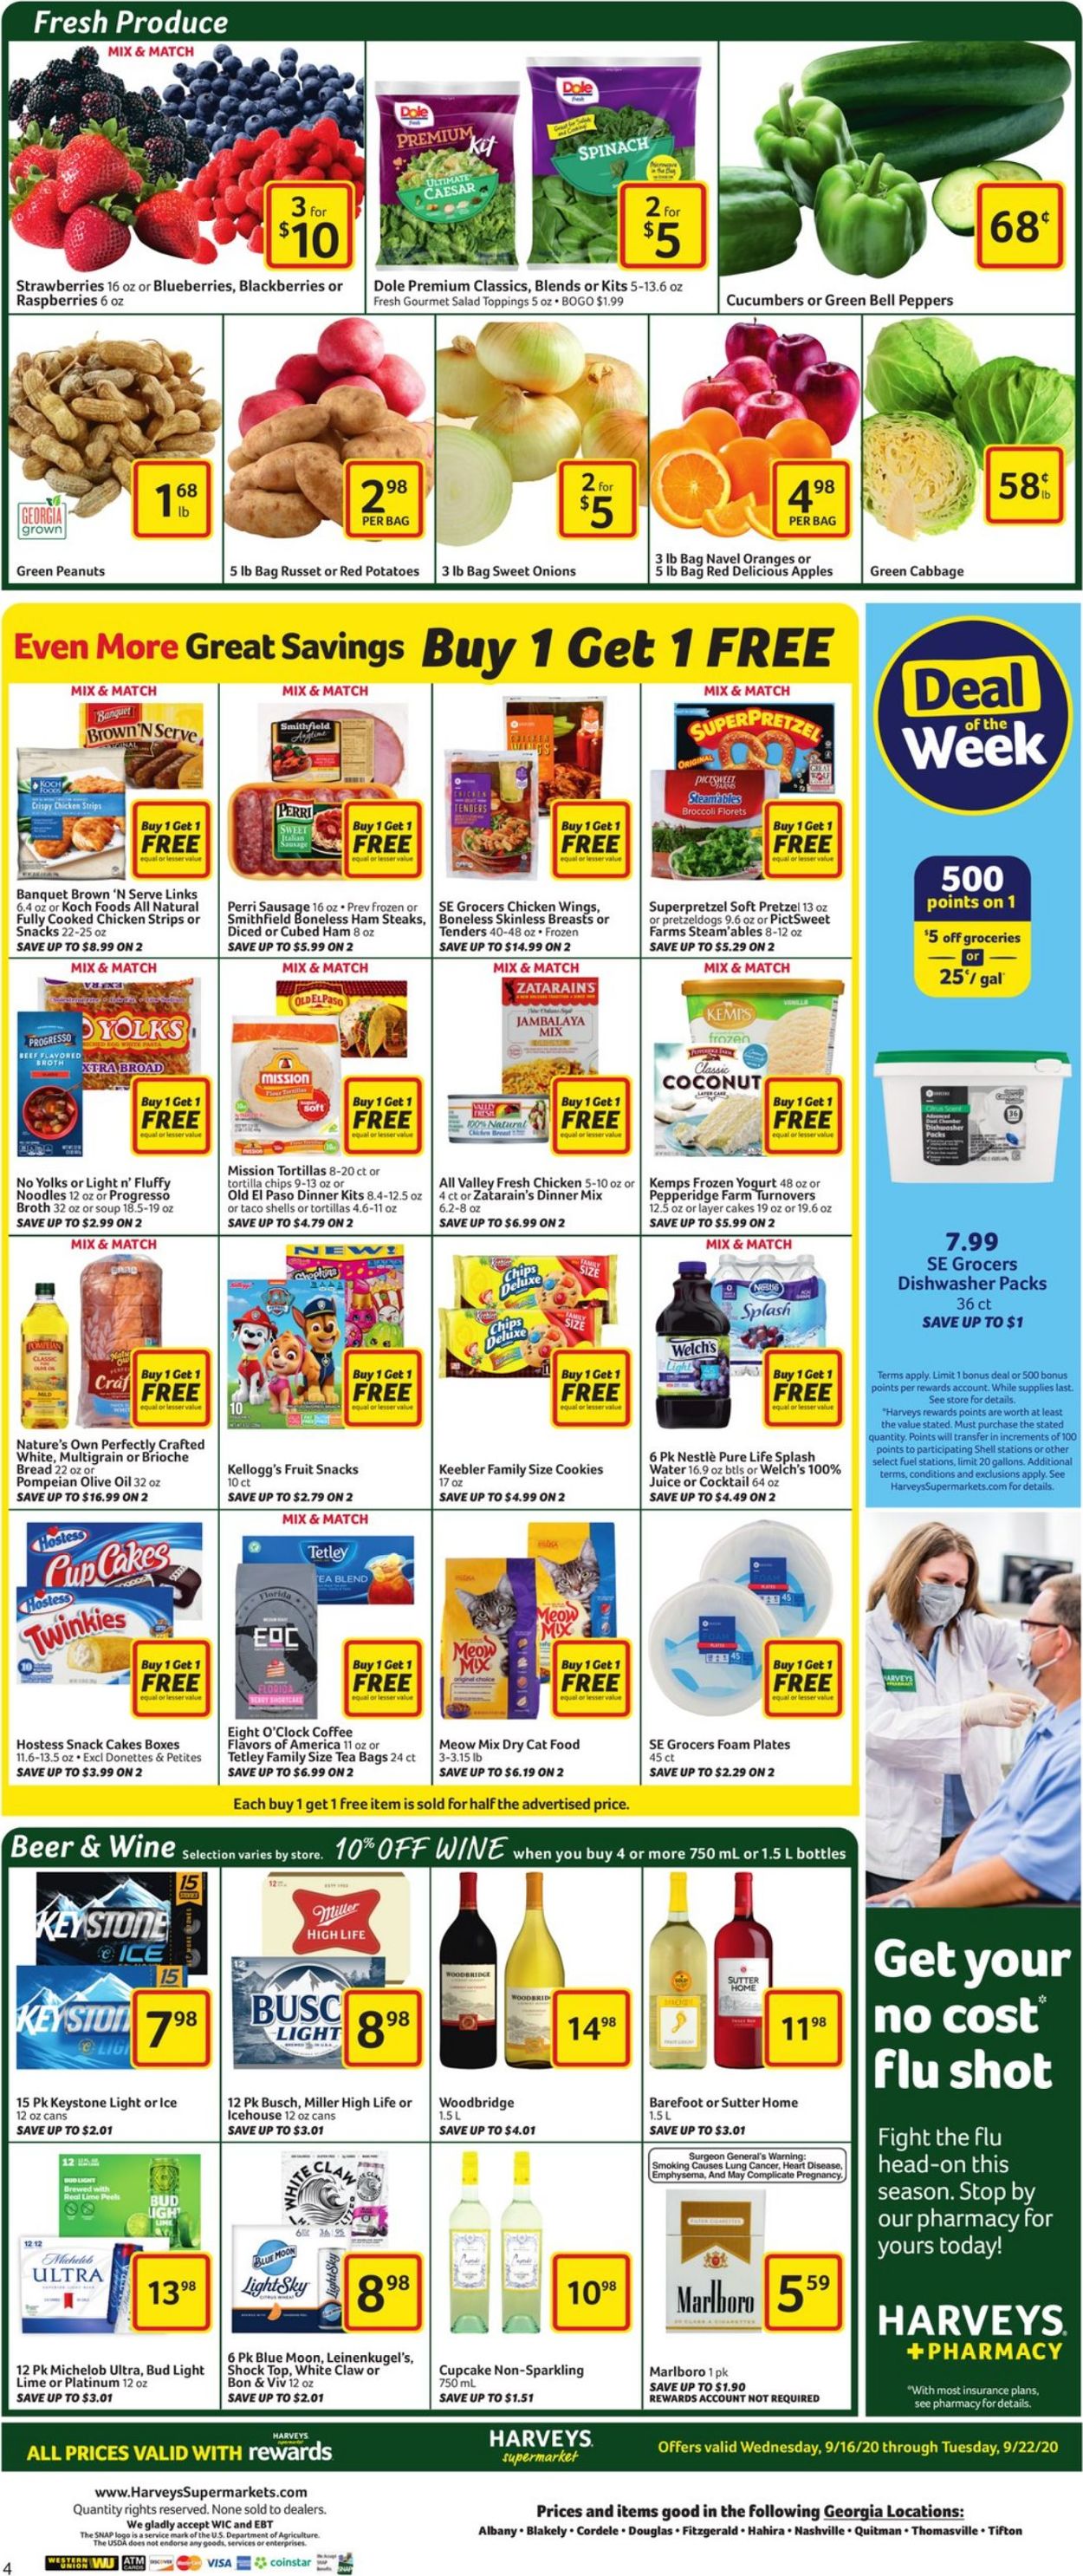 Catalogue Harveys Supermarket from 09/16/2020